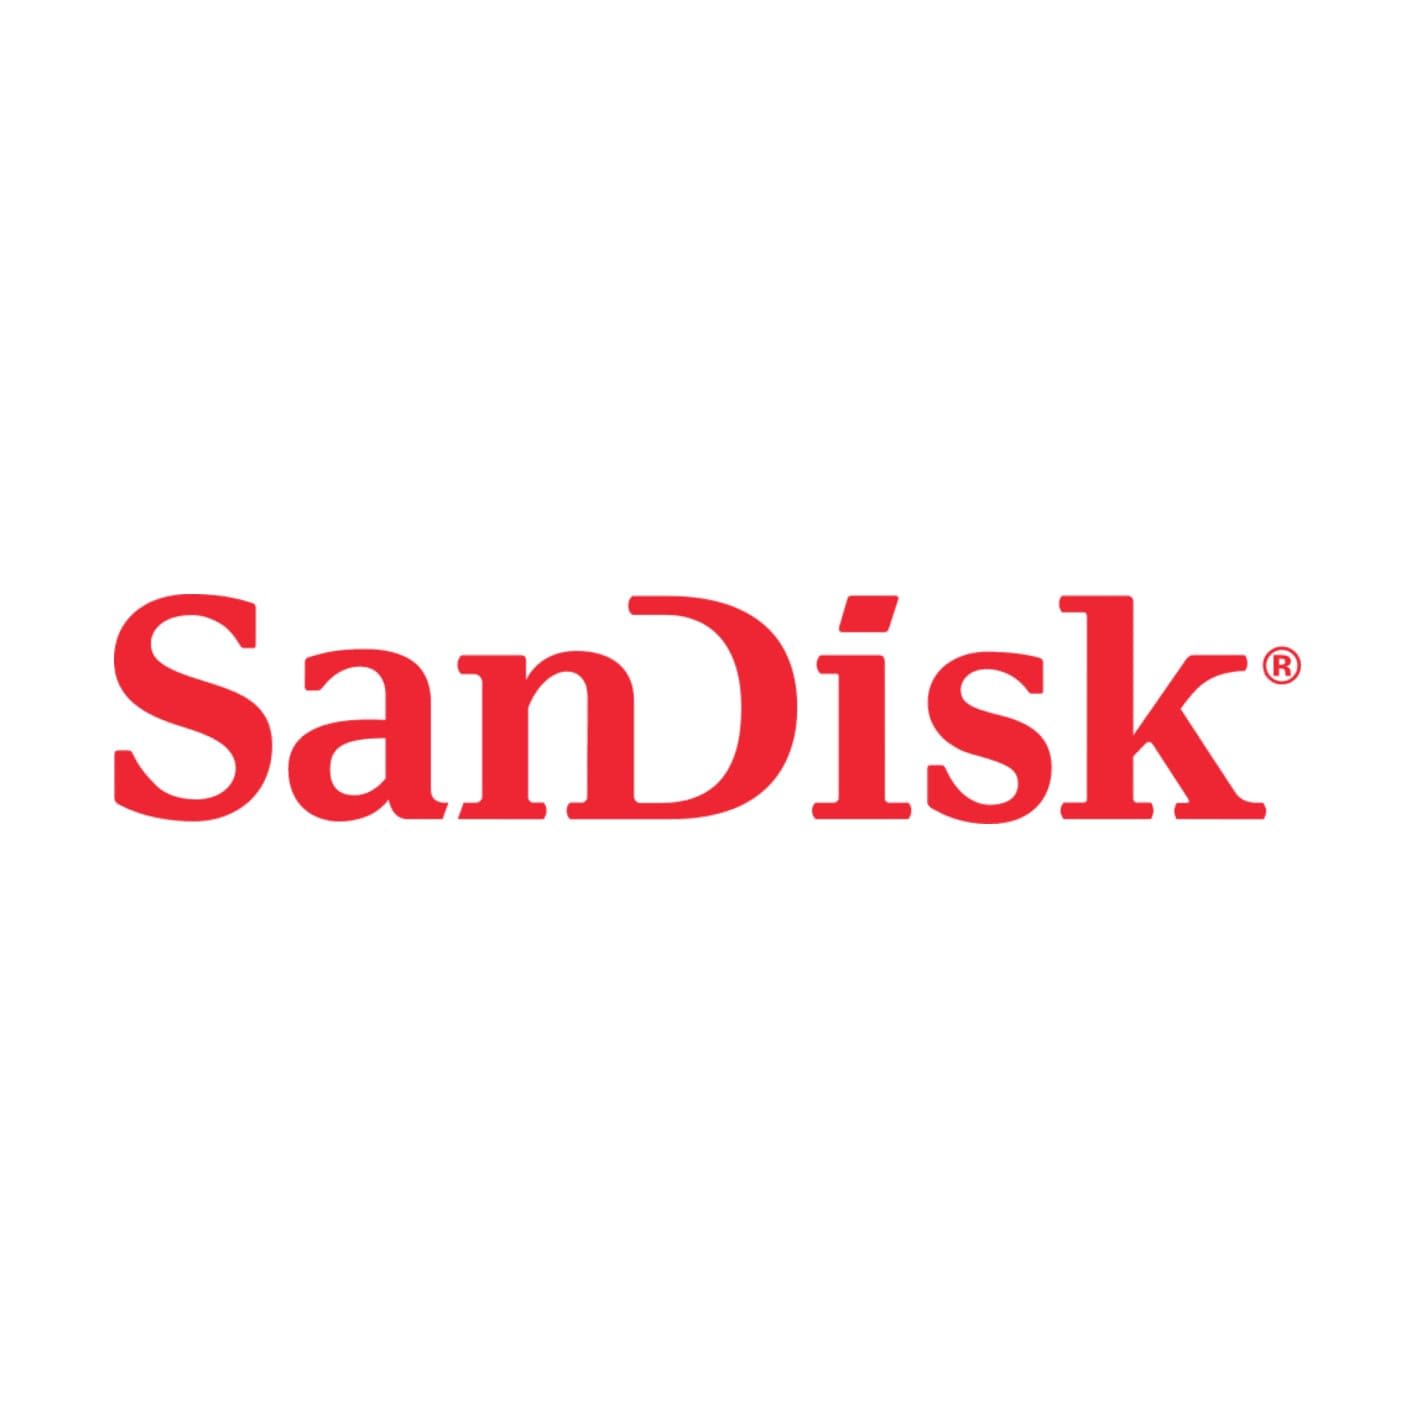 SANDISK Logo